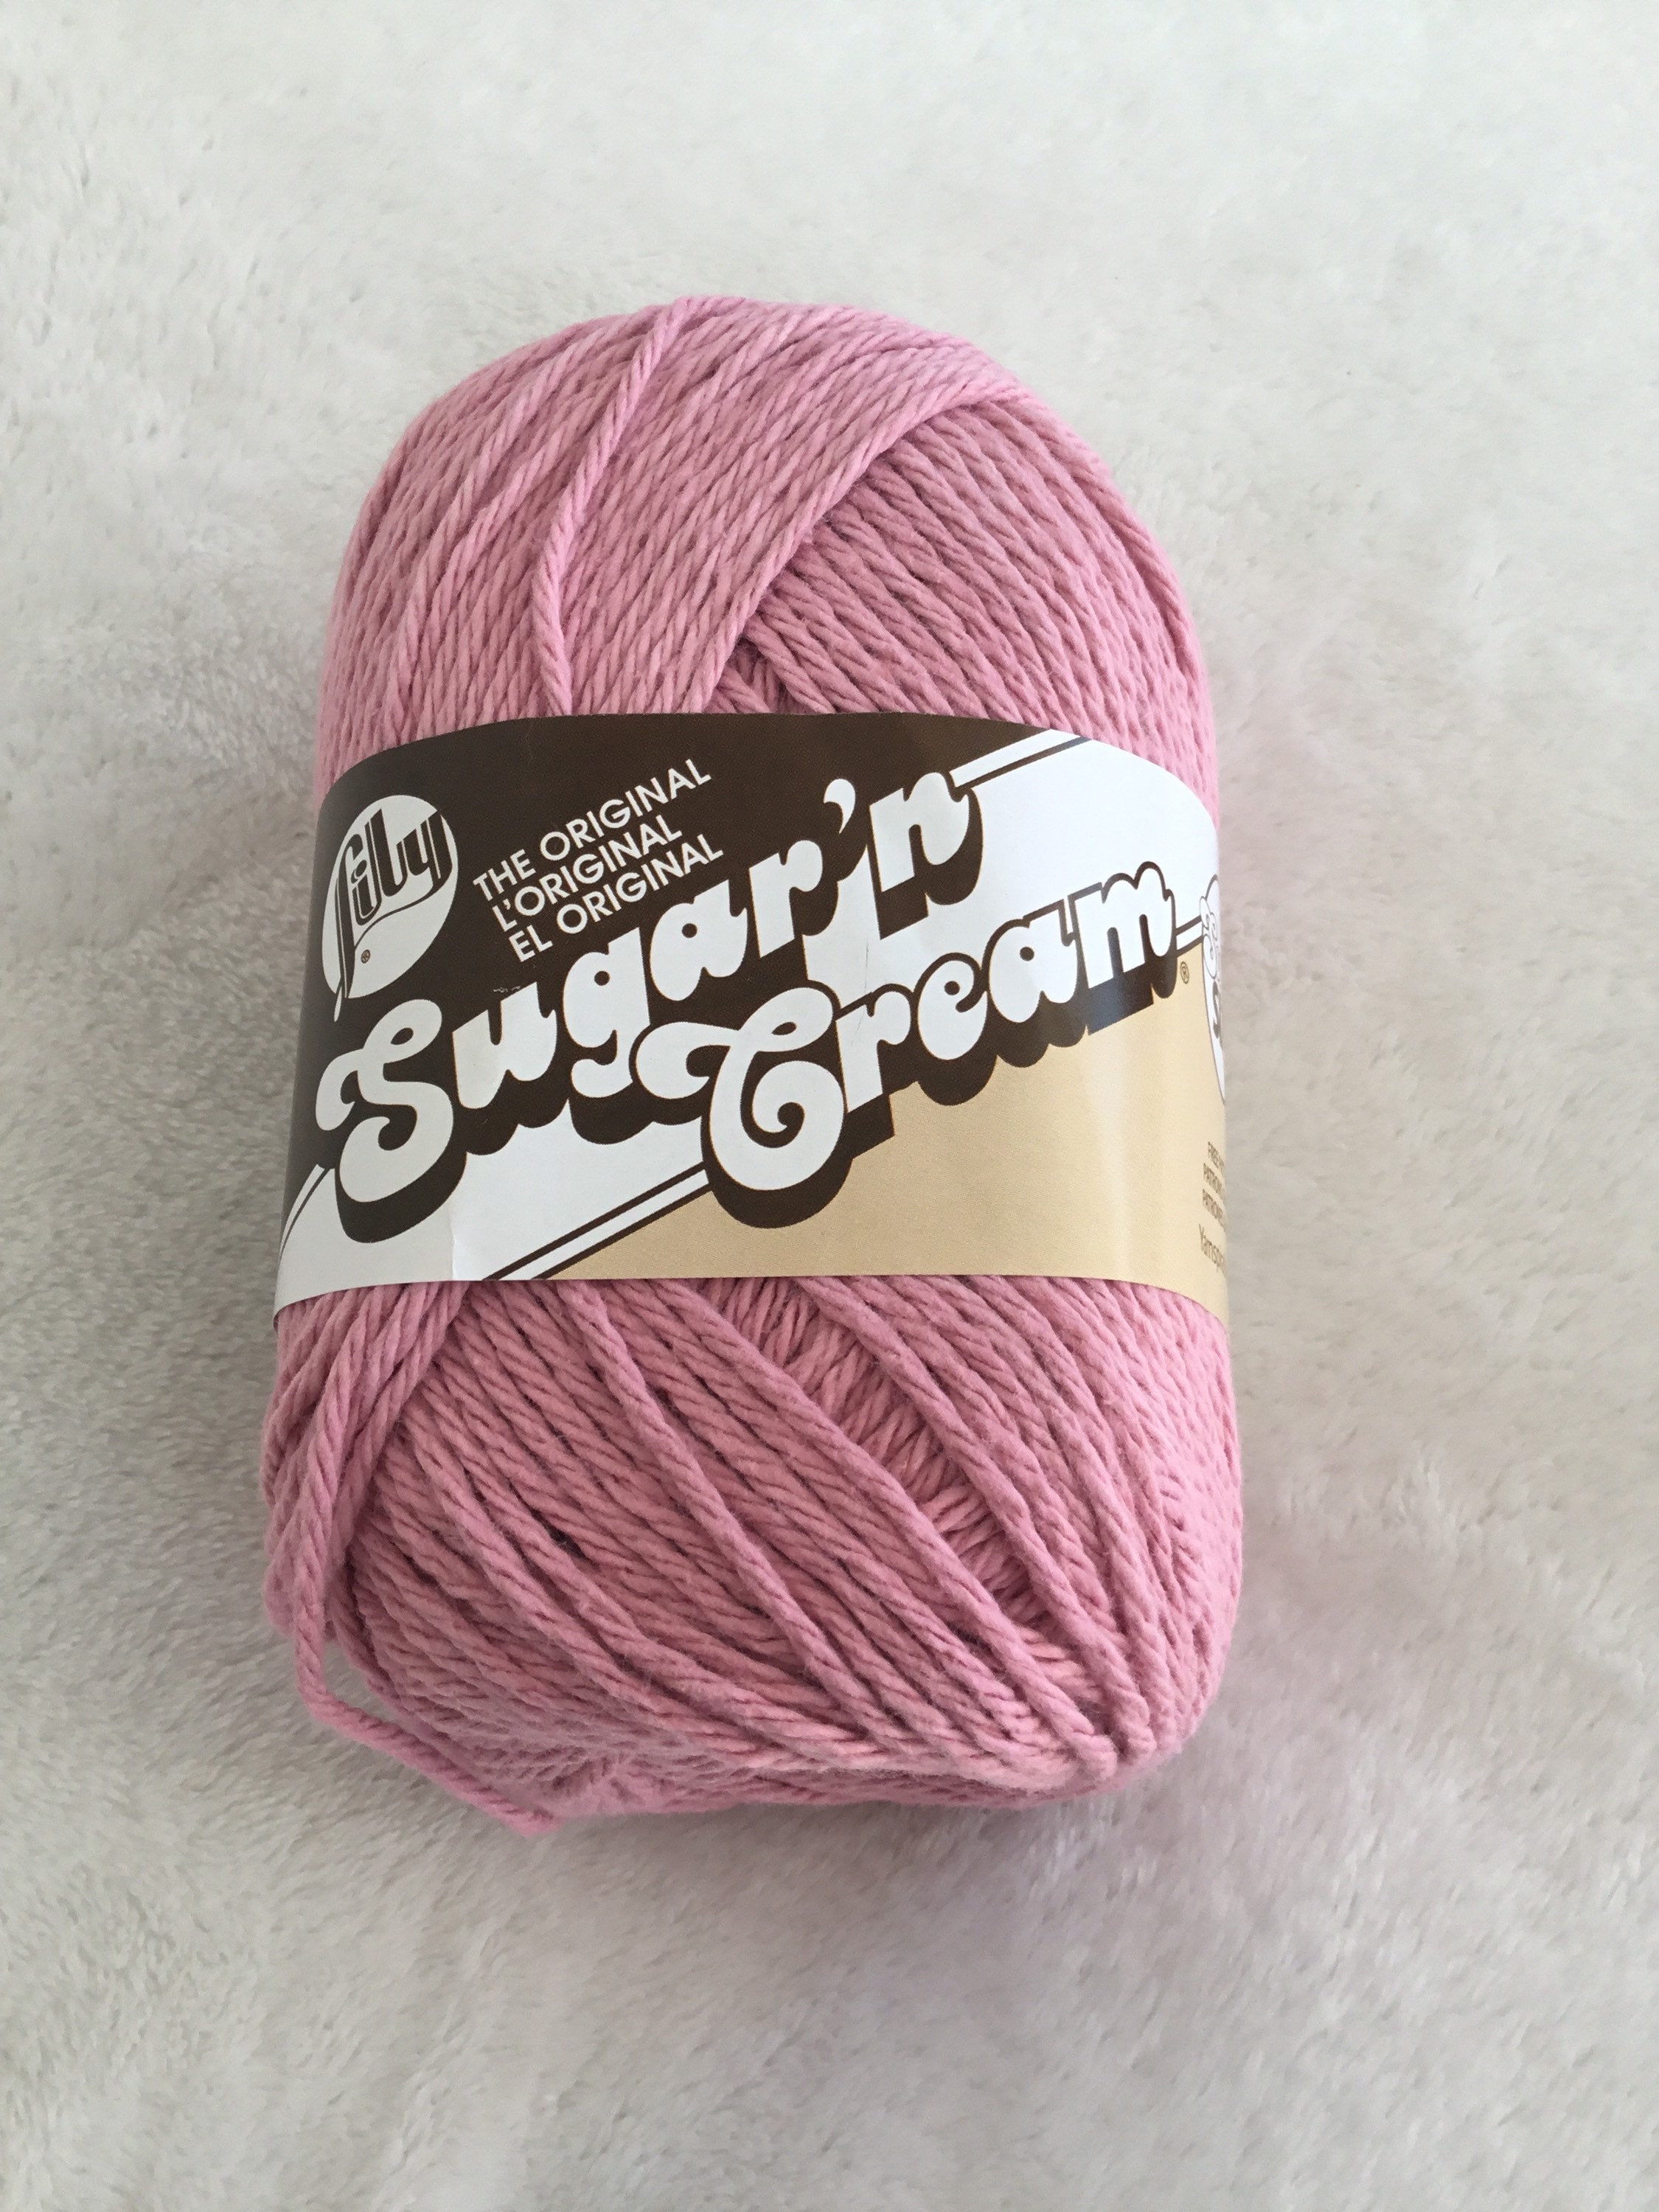 Lily Sugar'N Cream Super Size Warm Brown Yarn - 6 Pack of 113g/4oz